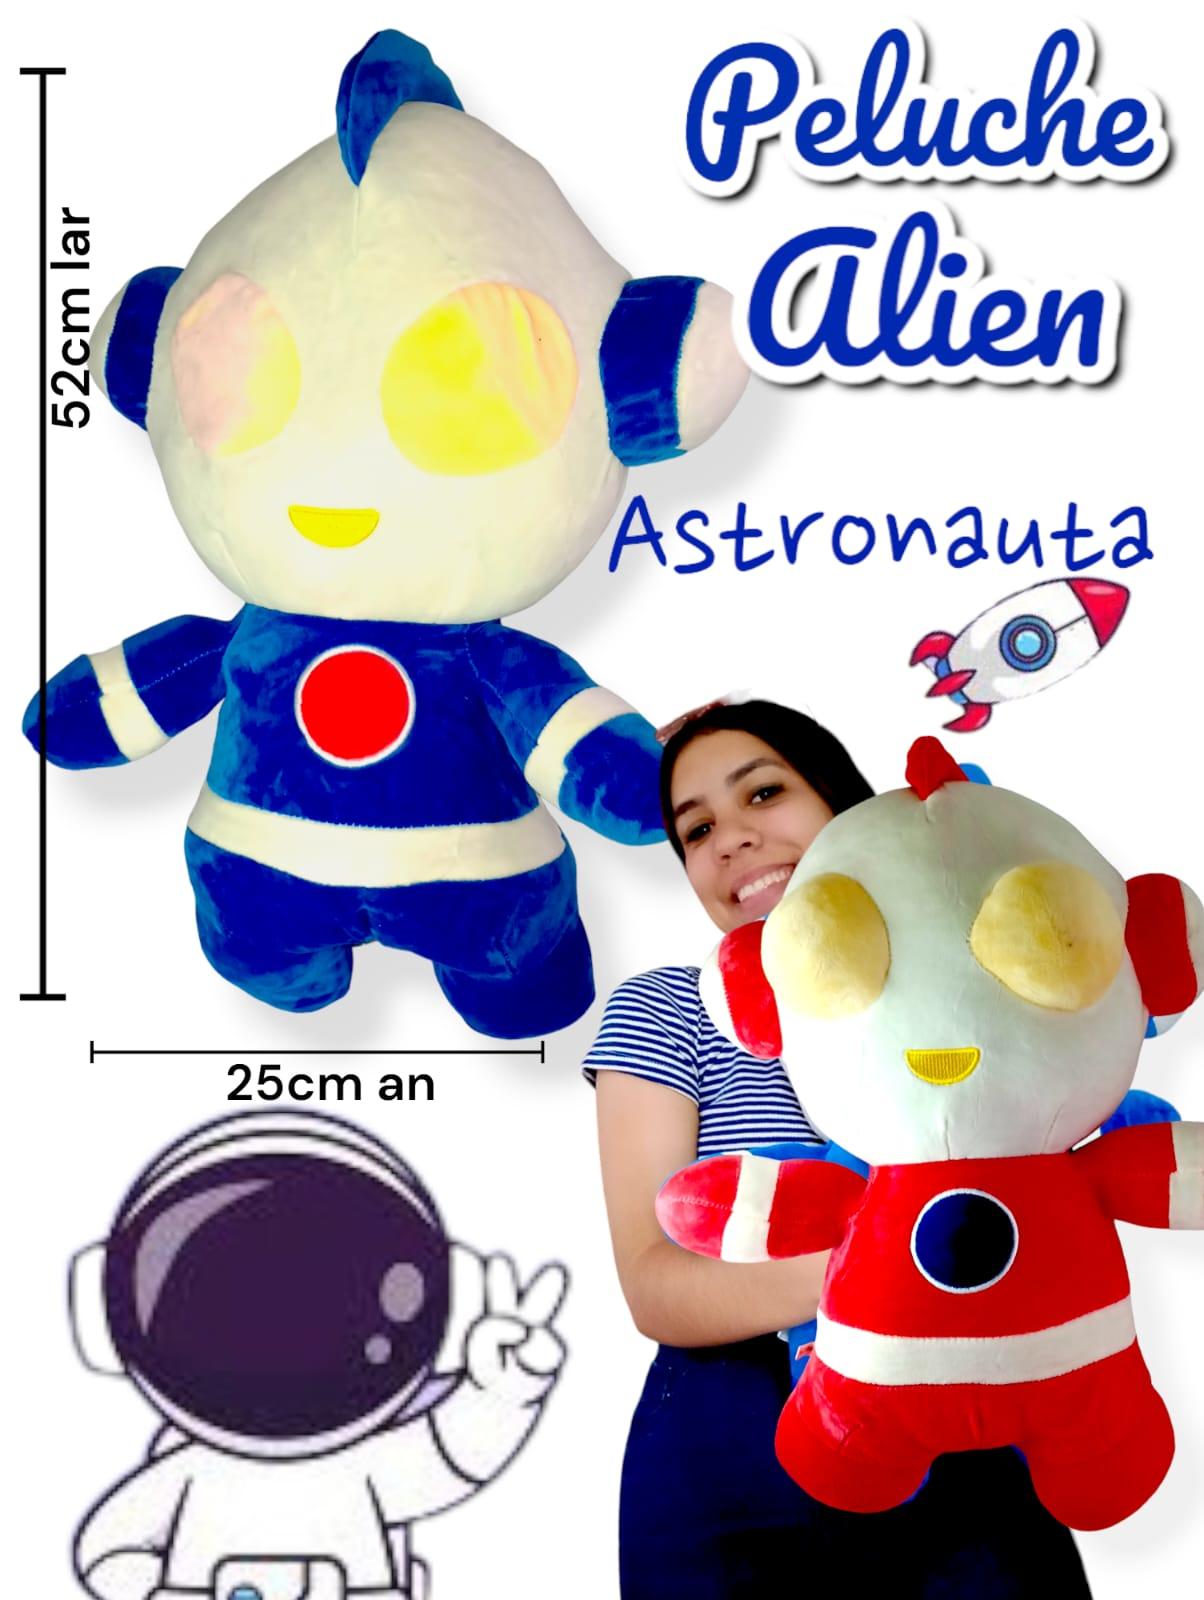 Peluche Alien Astronauta 52cm 